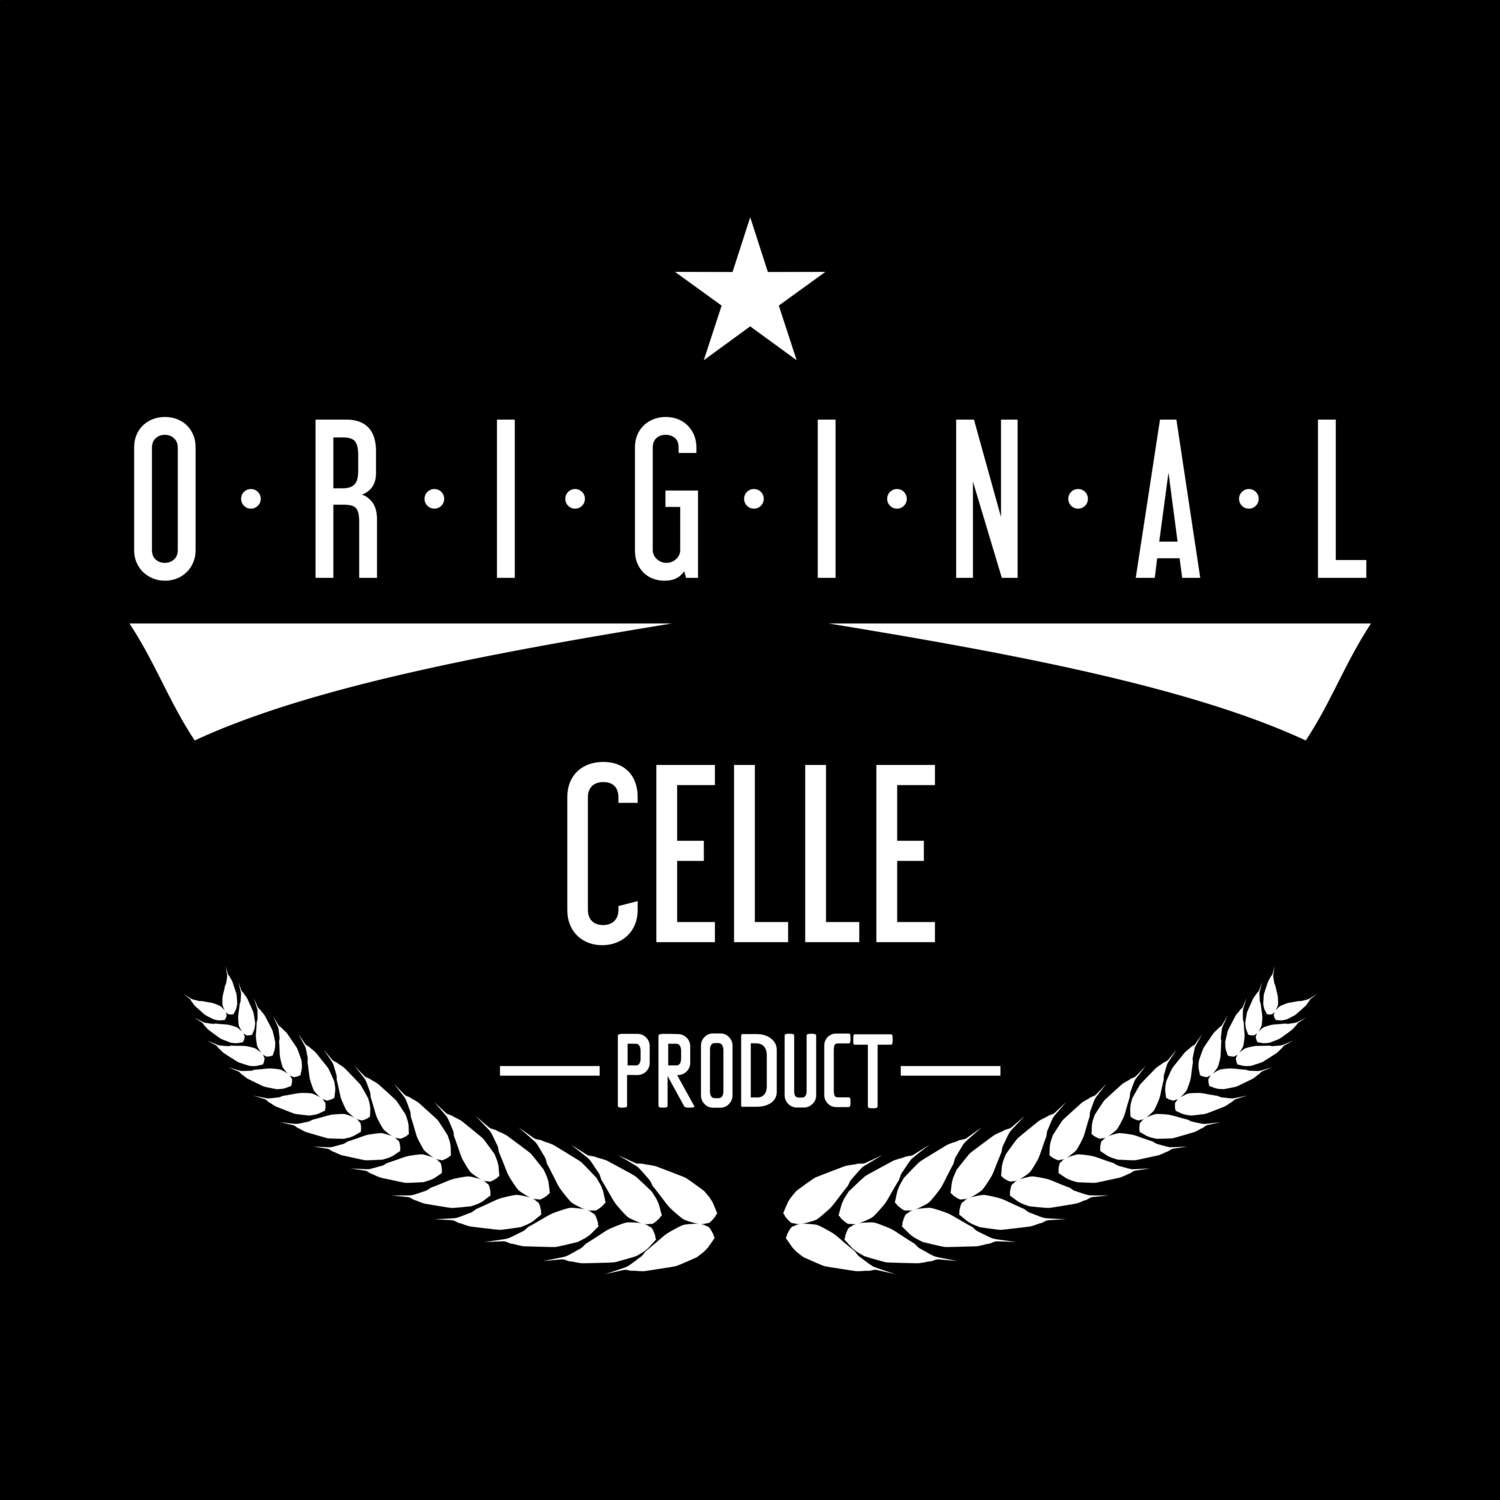 Celle T-Shirt »Original Product«